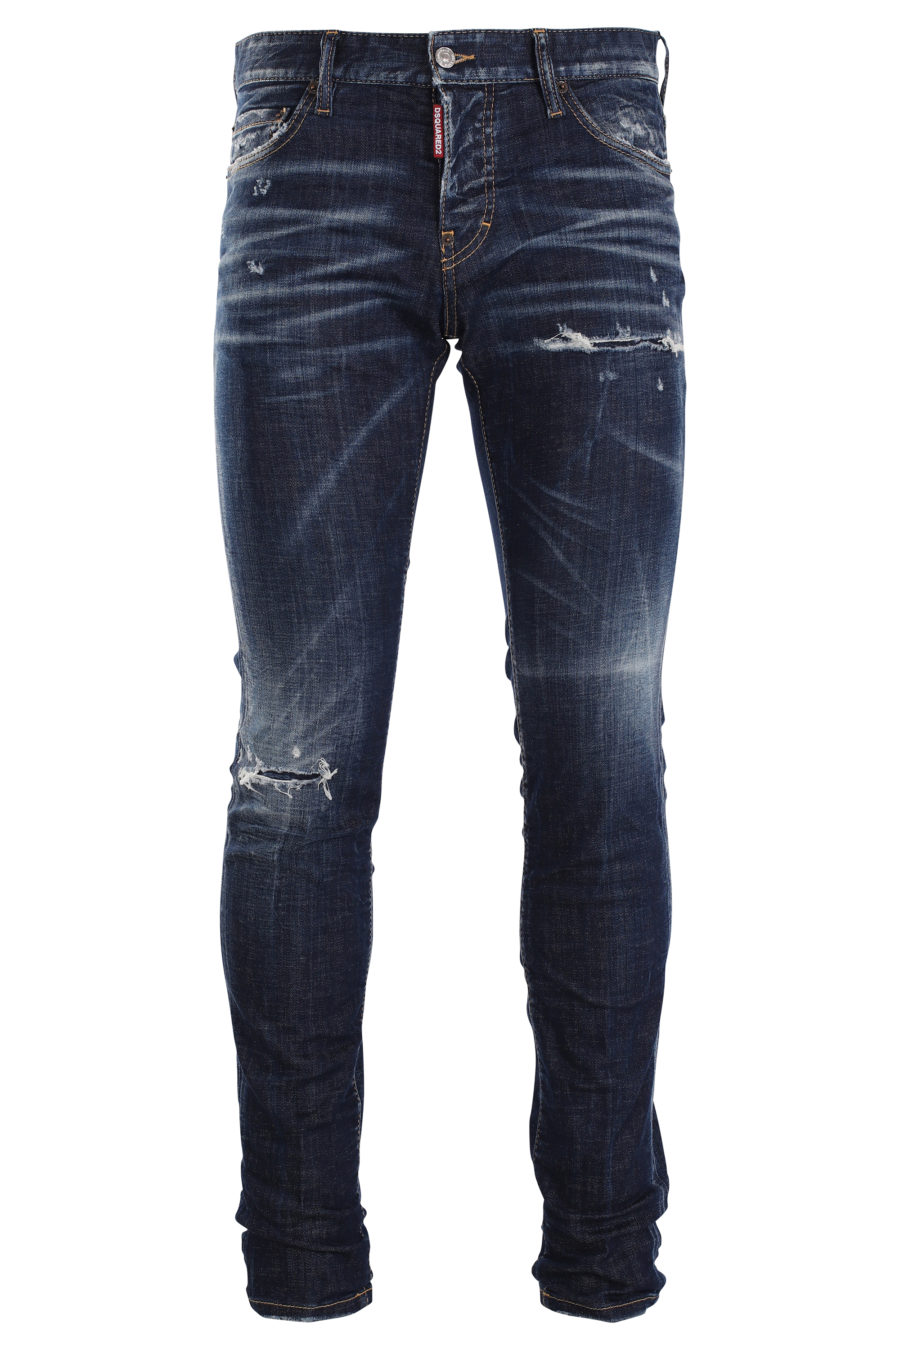 Pantalón vaquero "slim jean" azul con efecto desgastado - IMG 9989